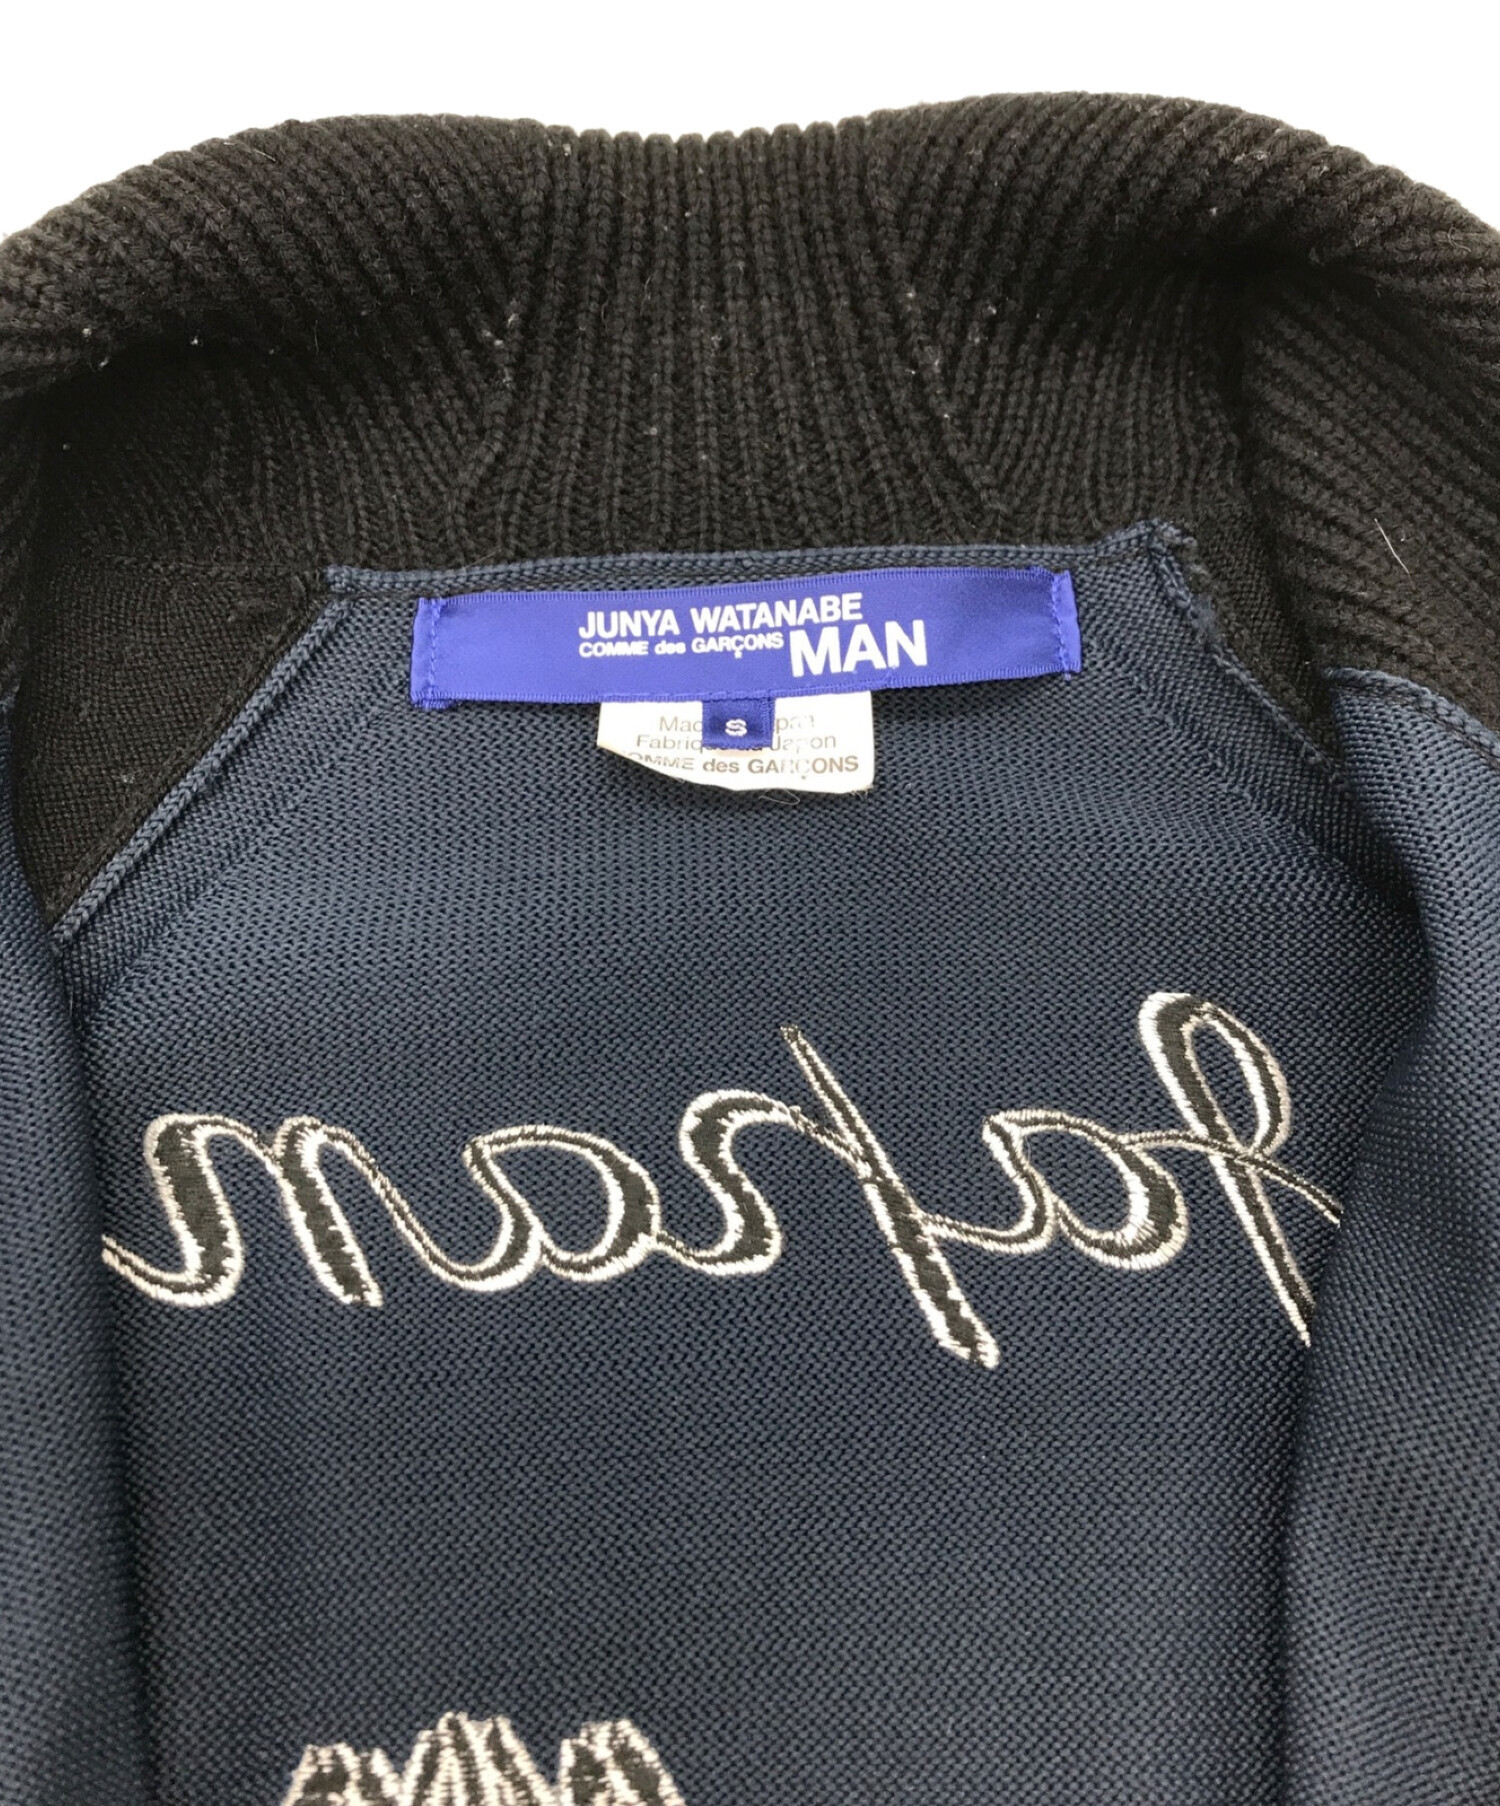 つーじ様専用)JUNYA WATANABE MAN スーベニアジャケット ブランド品